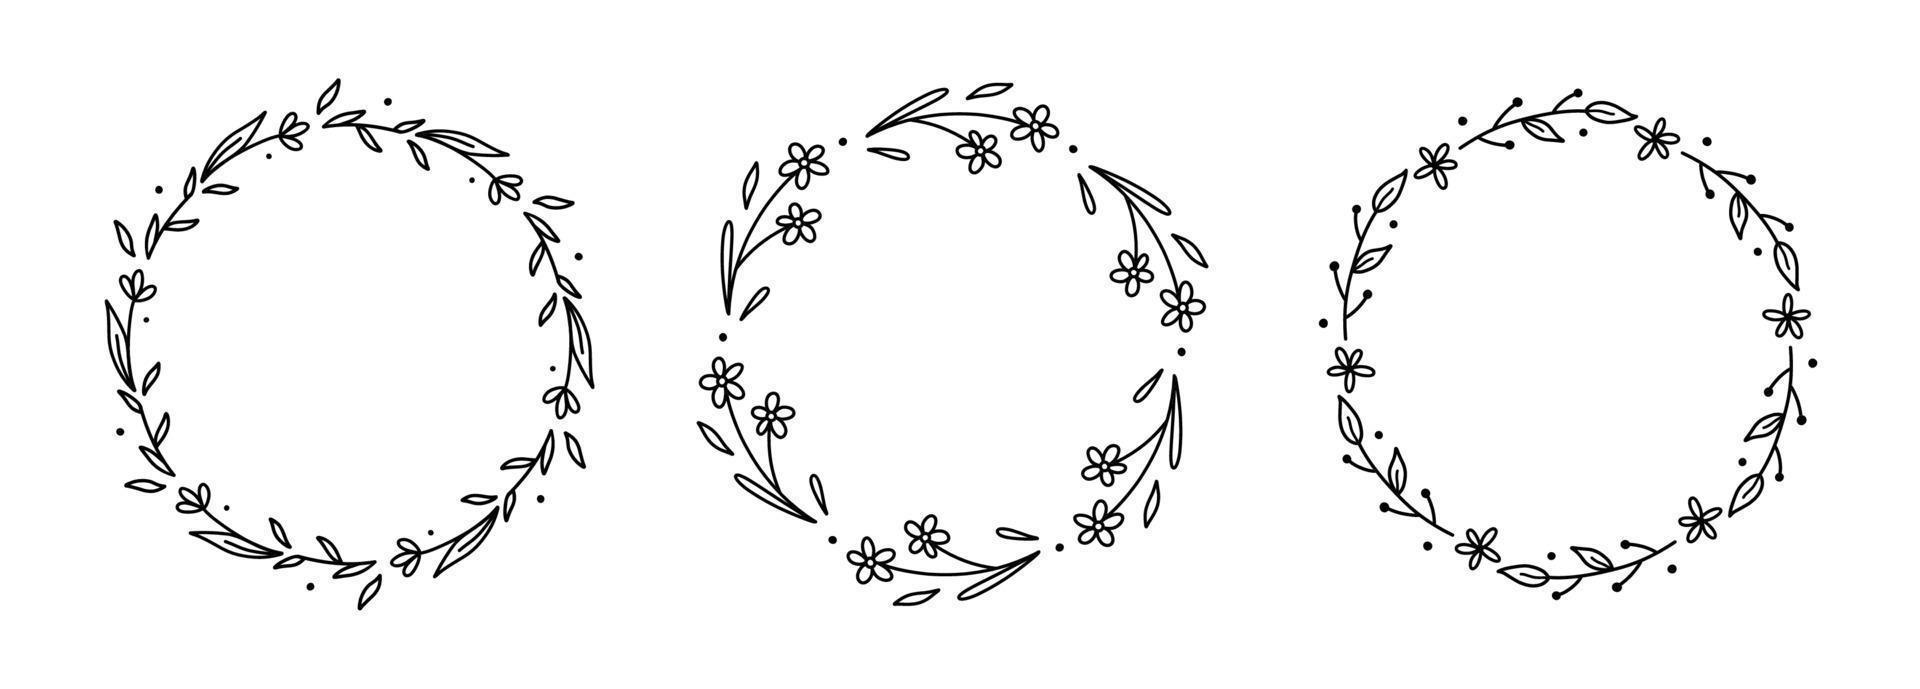 conjunto de guirlanda floral isolado no fundo branco. molduras redondas com flores e folhas. ilustração vetorial desenhada à mão em estilo doodle. perfeito para cartões, convites, decorações, logotipo. vetor